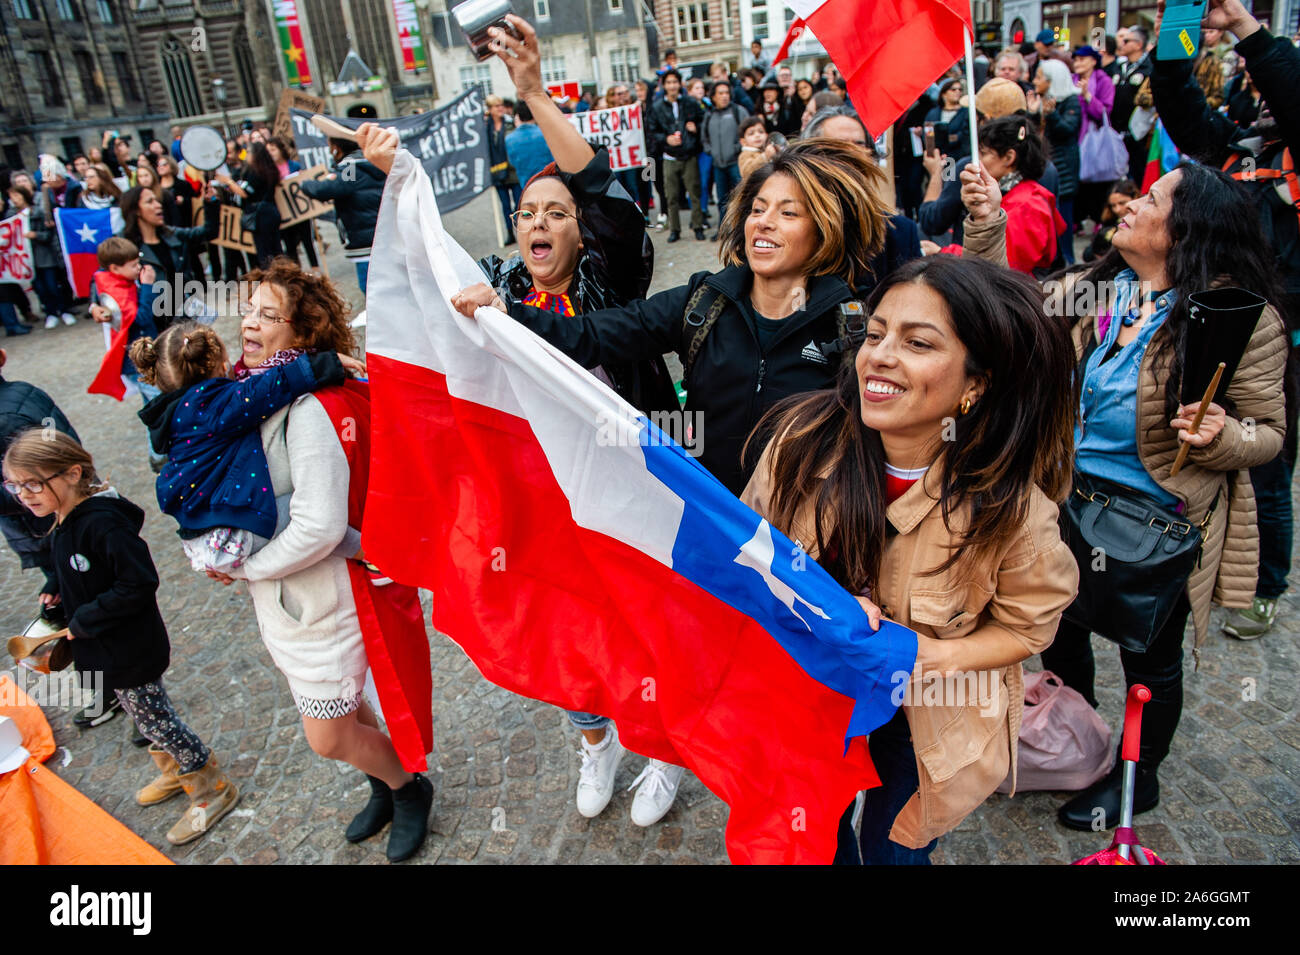 Tres mujeres chilenas se ve saltando sujetando una bandera de Chile durante  la manifestación.La comunidad chilena que vive en los Países Bajos sigue  demostrando para mostrar su descontento con la situación actual